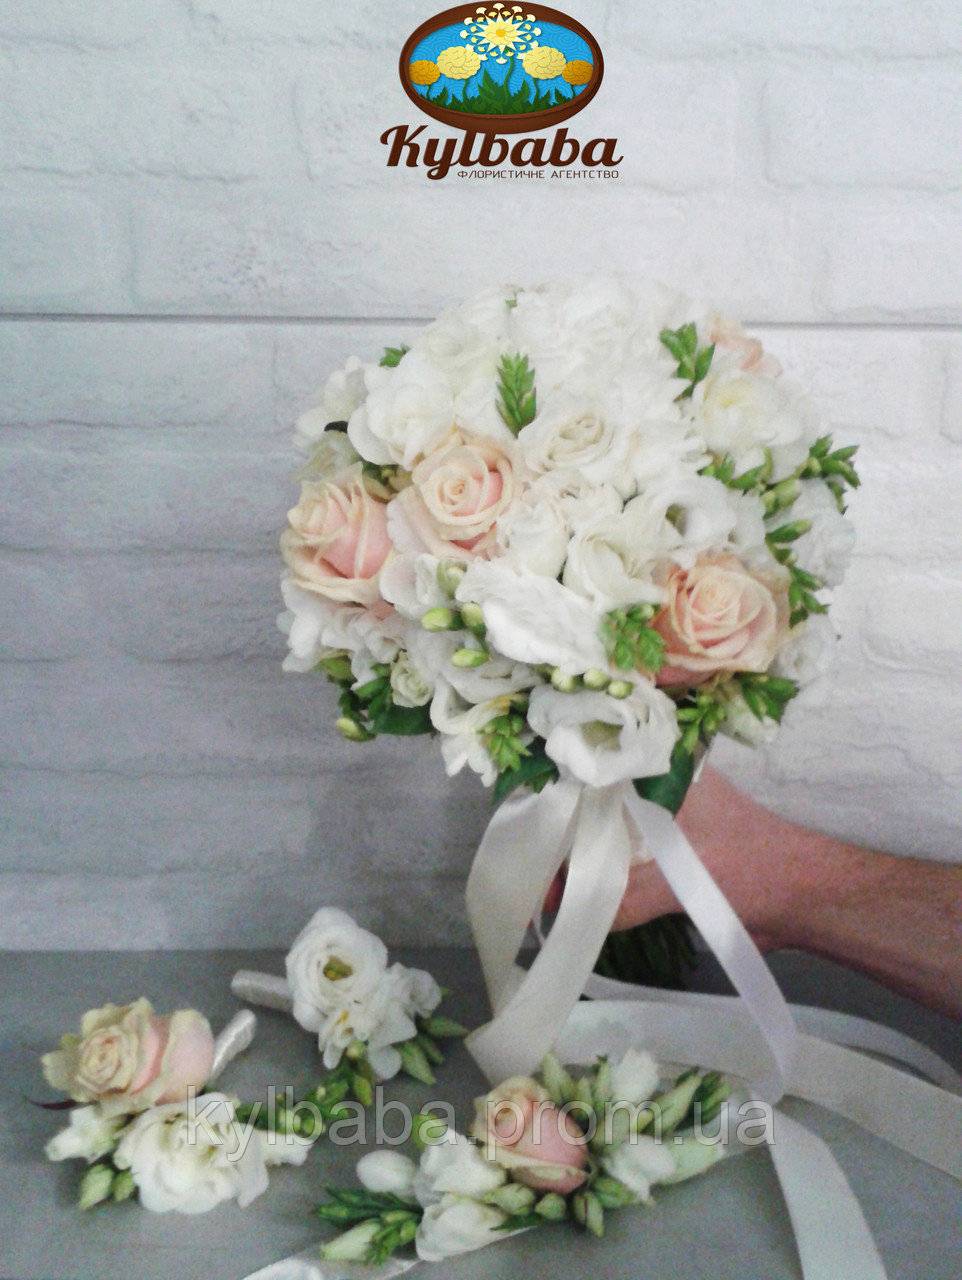 Свадебный букет из эустомы: идеи и варианты цветочных композиций